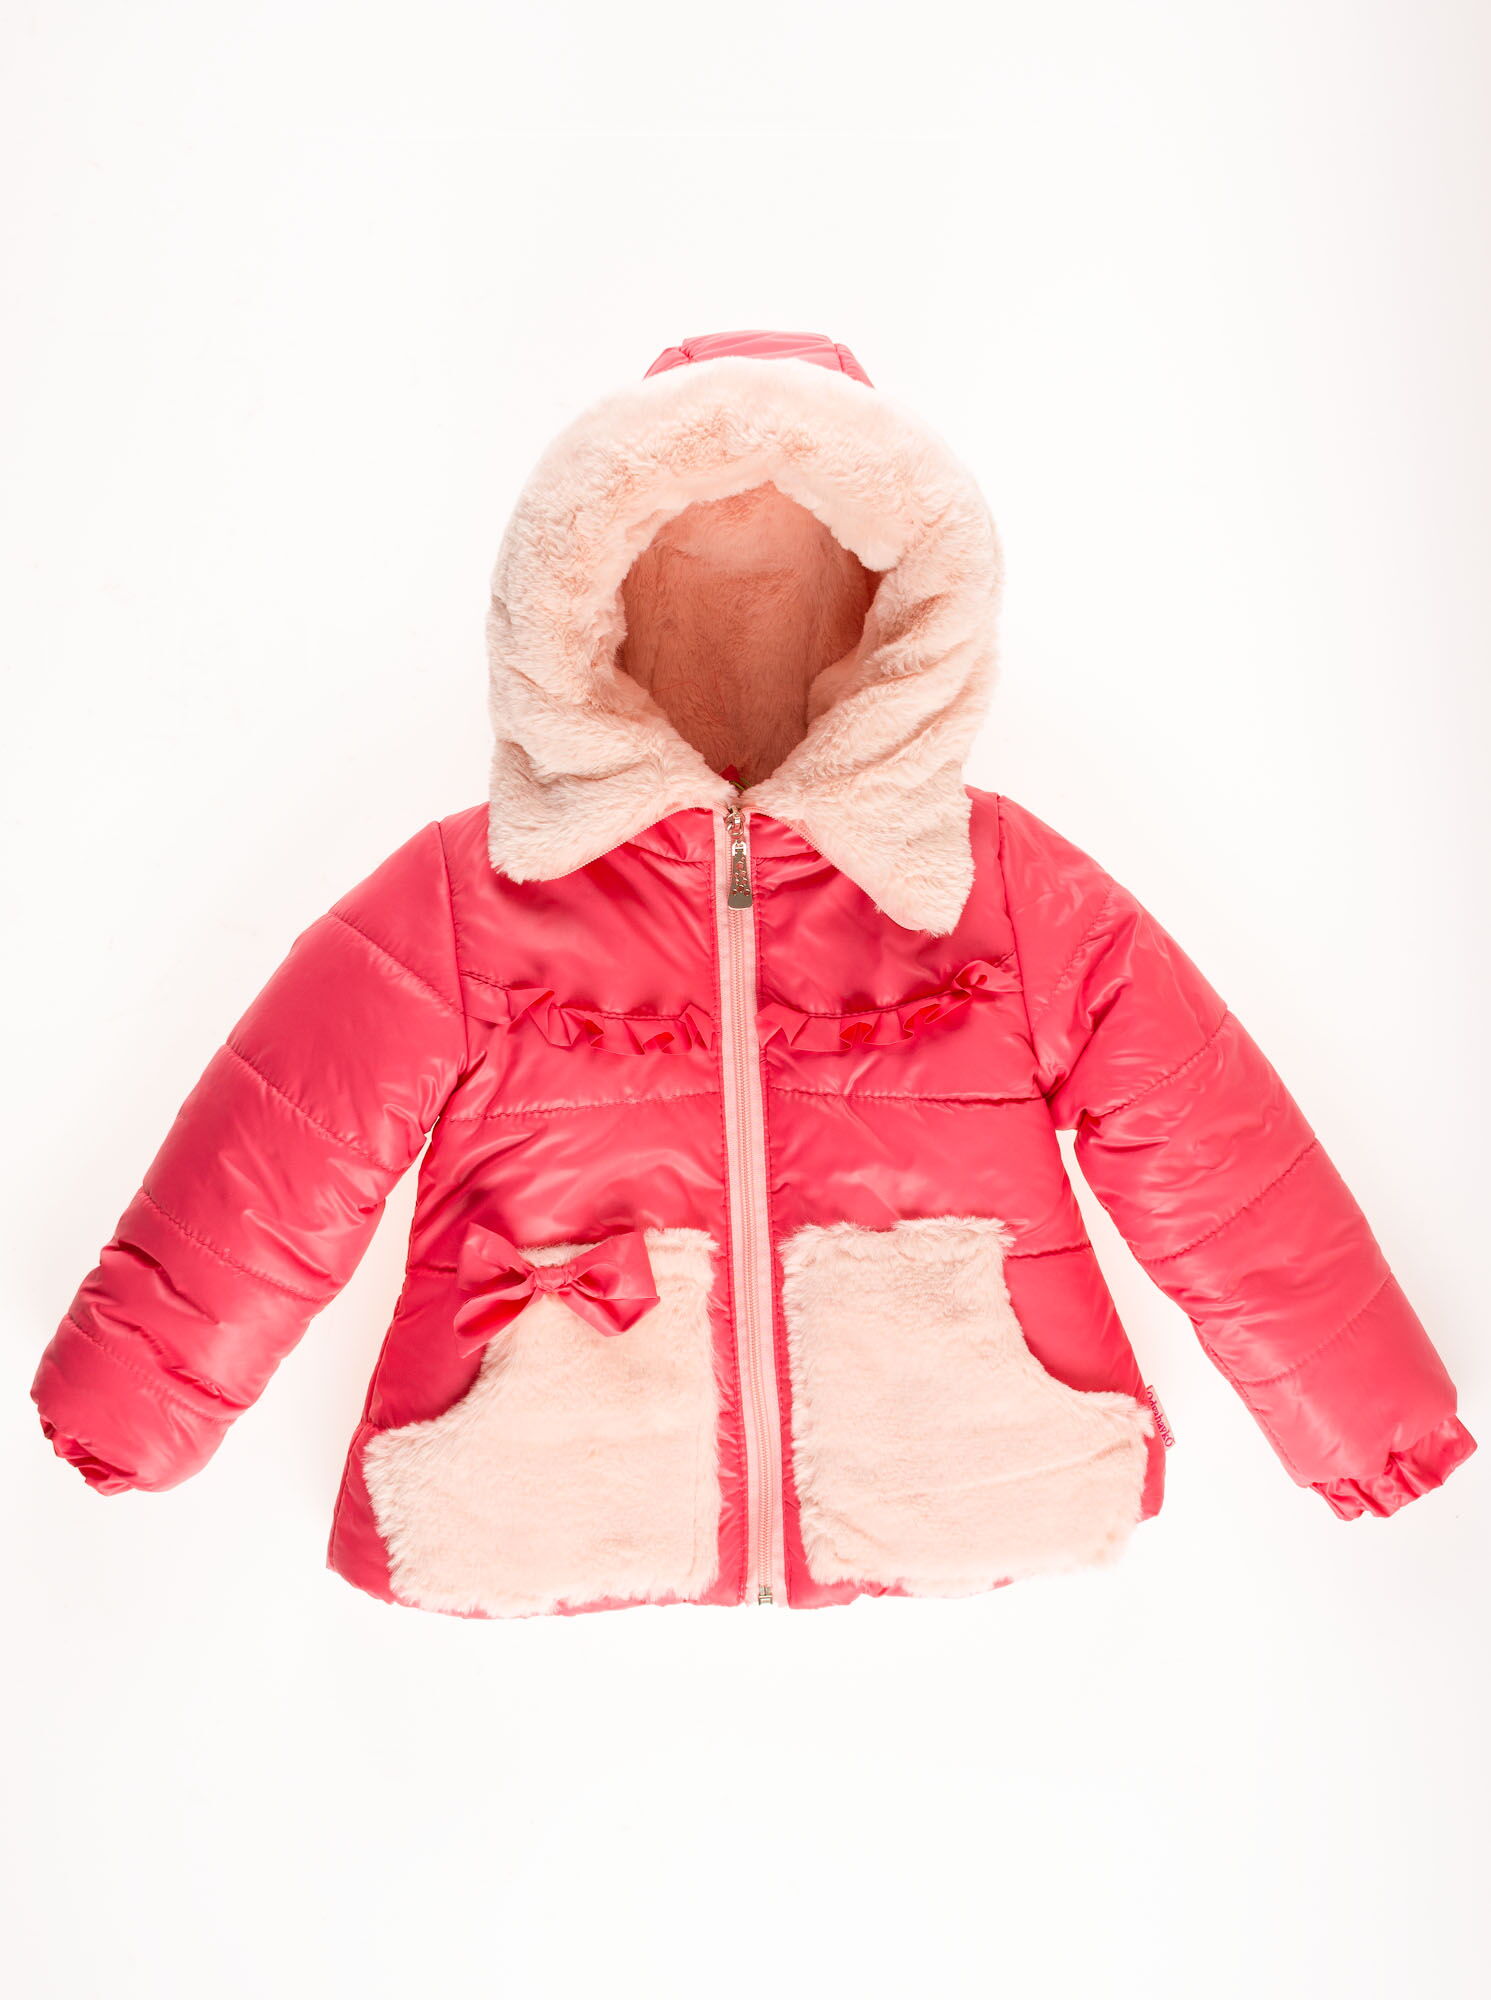 Комбинезон раздельный зимний для девочки (куртка+штаны) ОДЯГАЙКО коралловый 20023/32005 - картинка